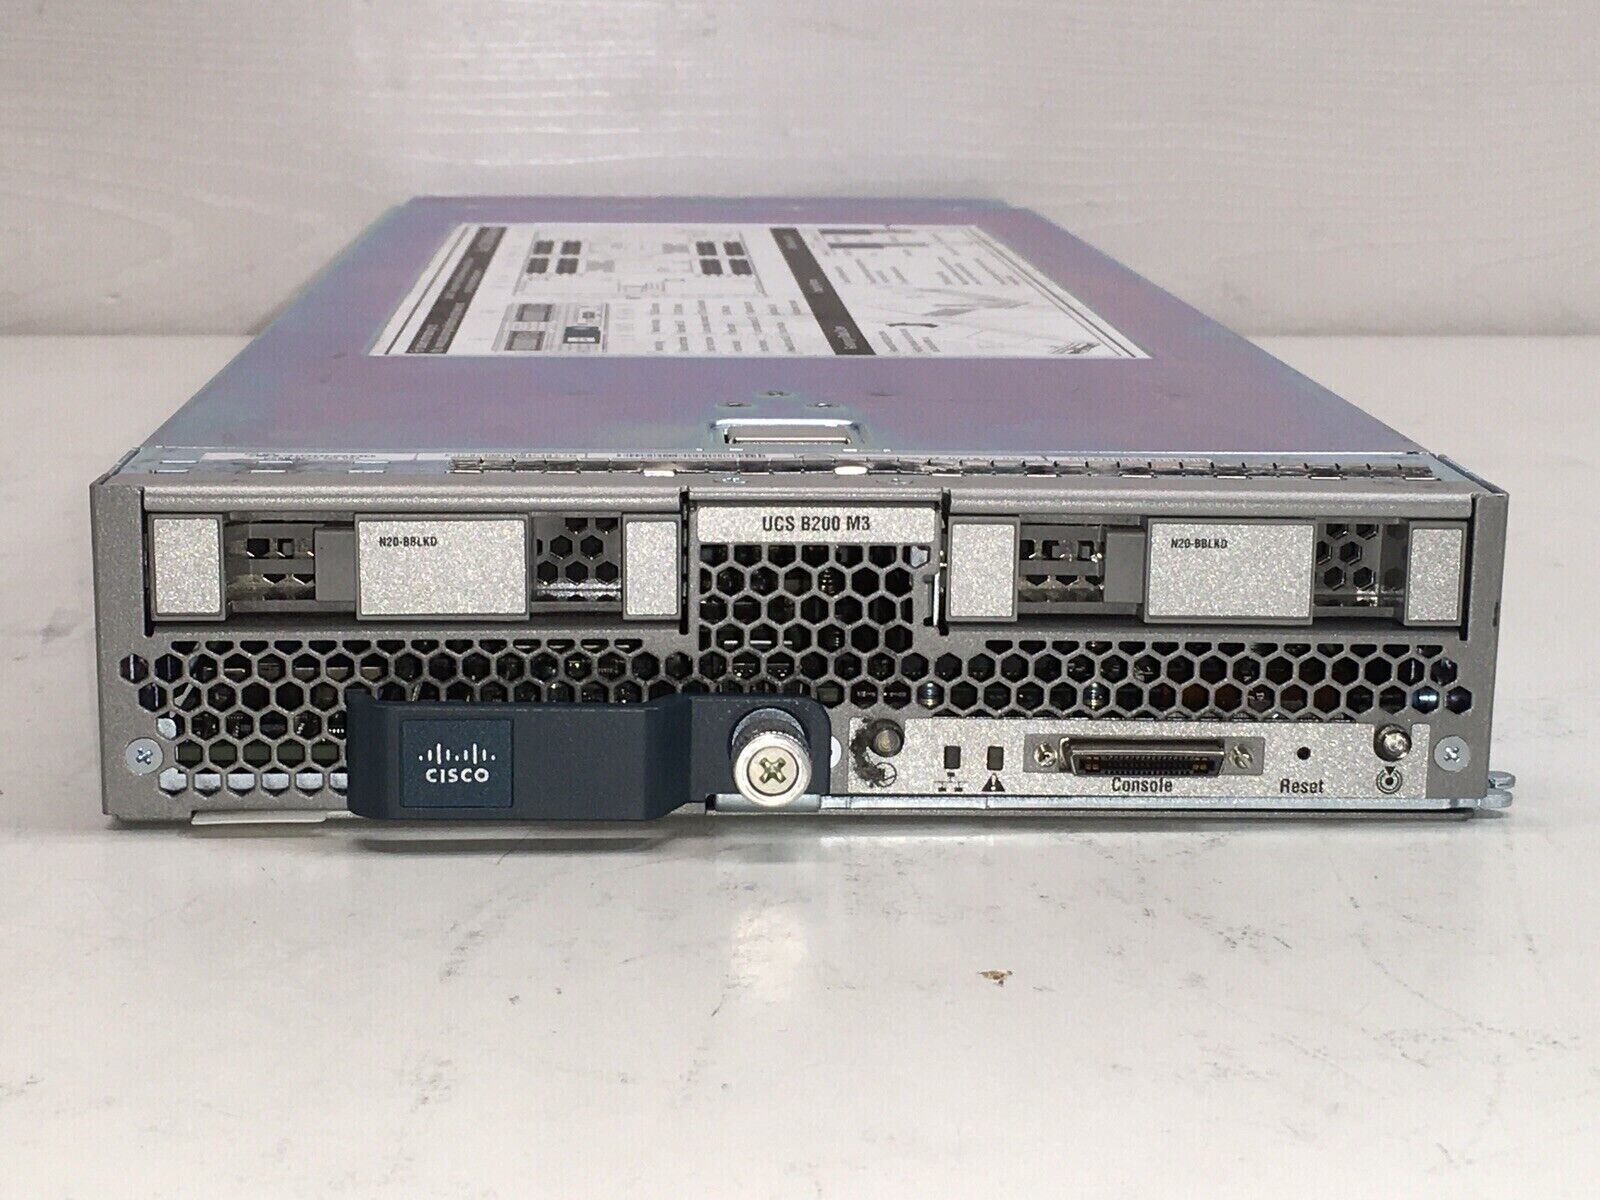 Cisco UCS B200 M3 2 Bay Blade Server 256GB RAM / 2x E5-2680 @2.70GHZ CPU /NO HDD